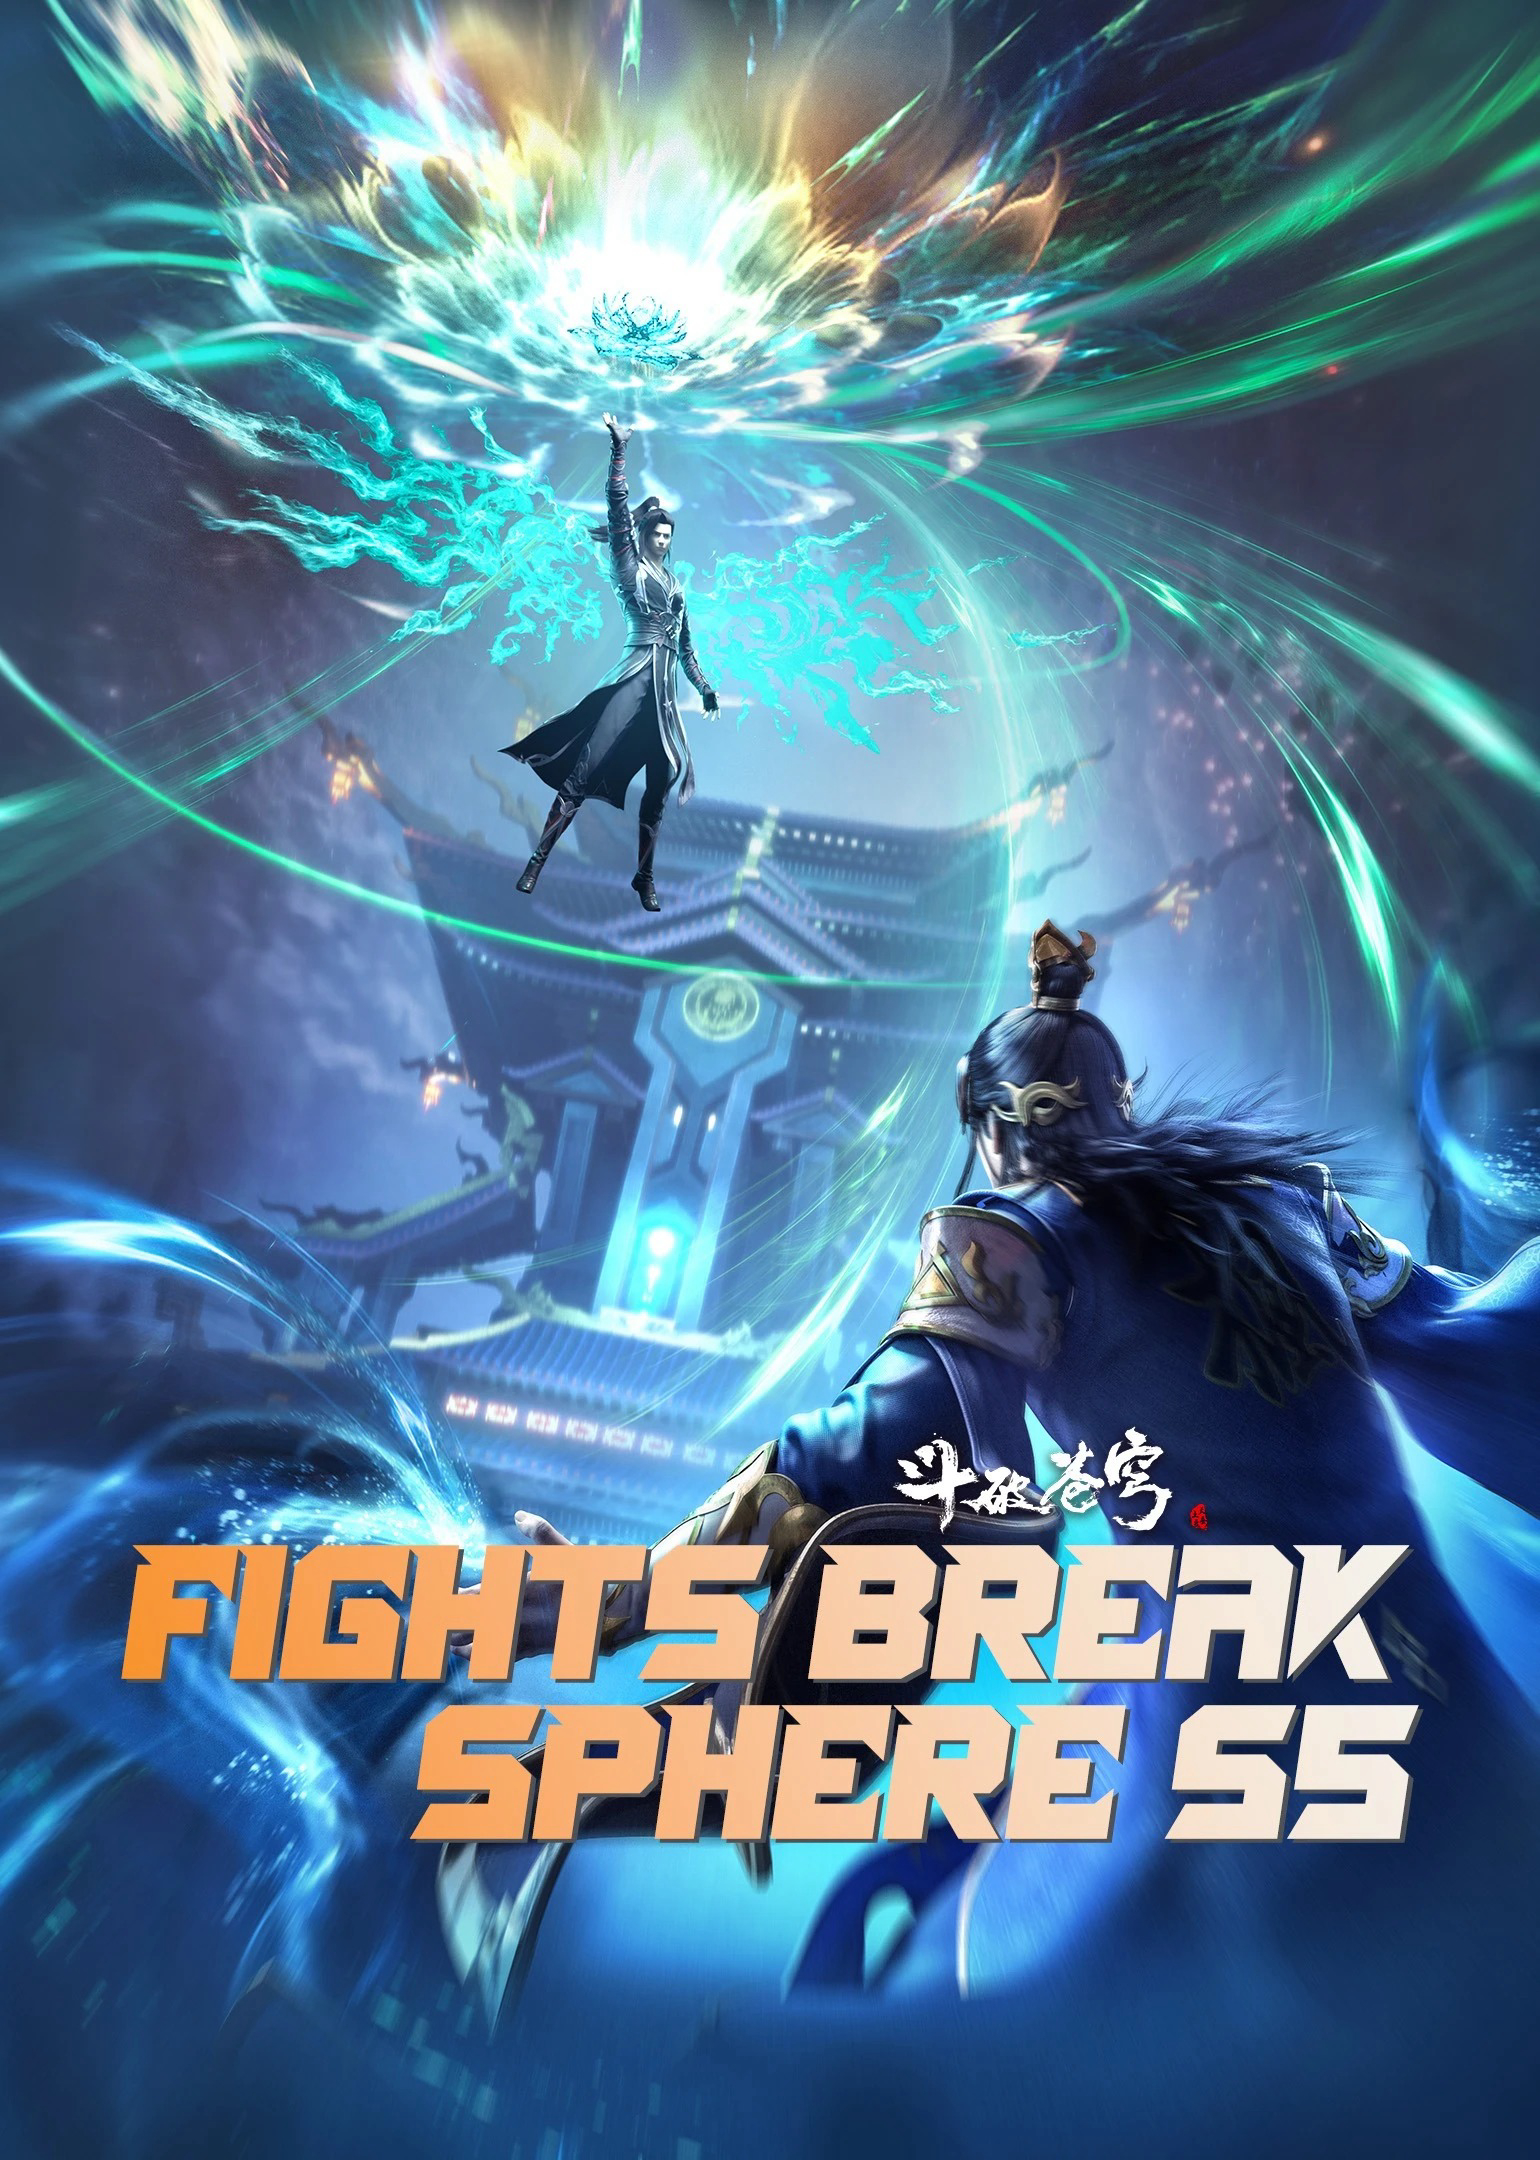 Poster Phim Đấu Phá Thương Khung Ngoại Truyện (Fights Break Sphere S5)